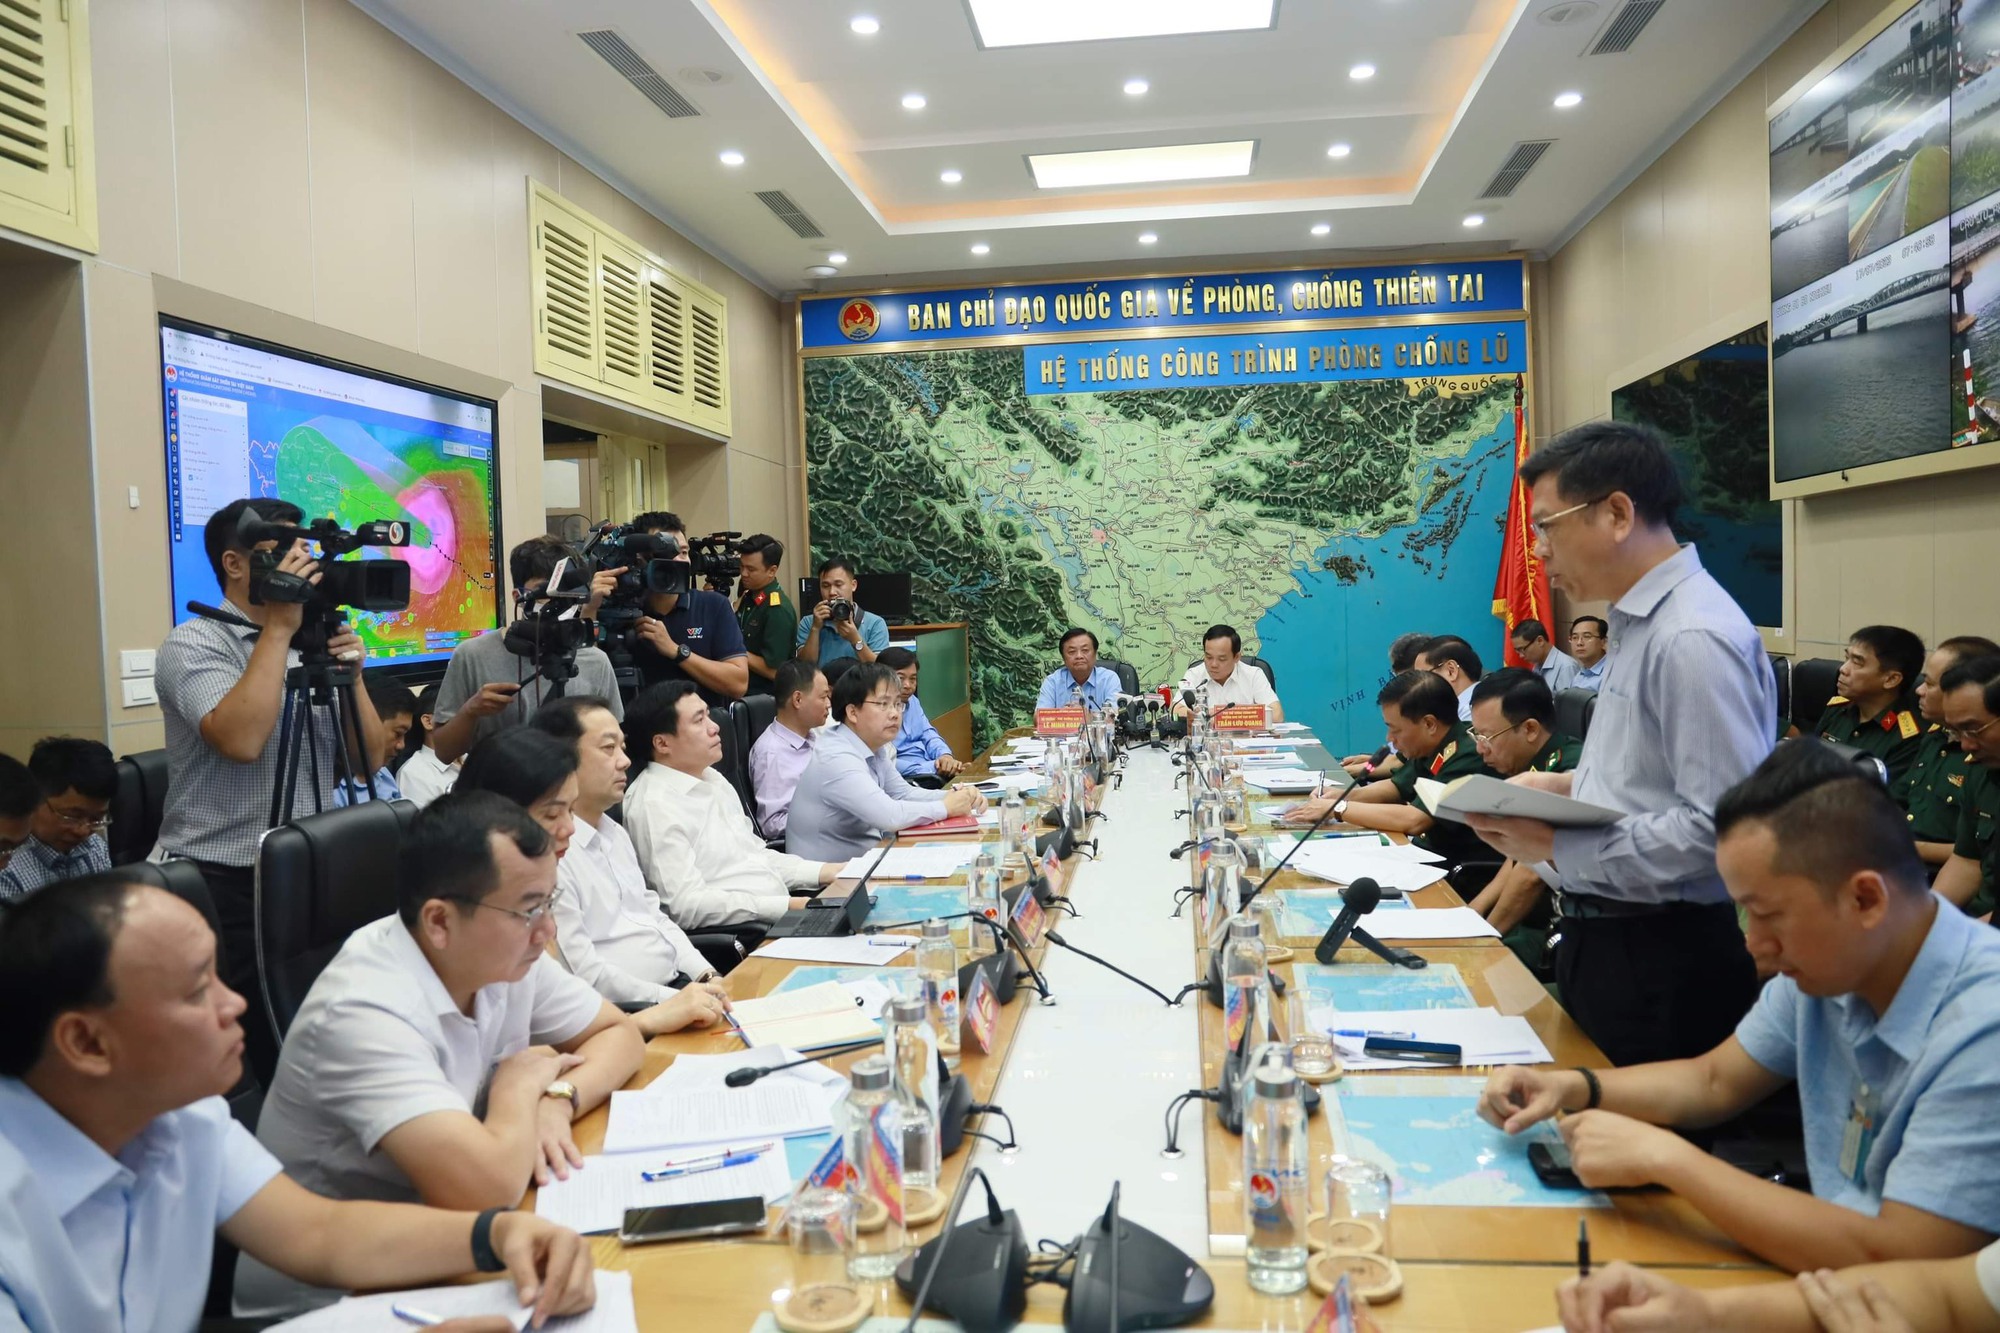 Sơ tán gần 30.000 người vào nơi an toàn trước khi bão số 1 đổ bộ, Quảng Ninh, Hải Phòng cấm biển hôm nay  - Ảnh 2.